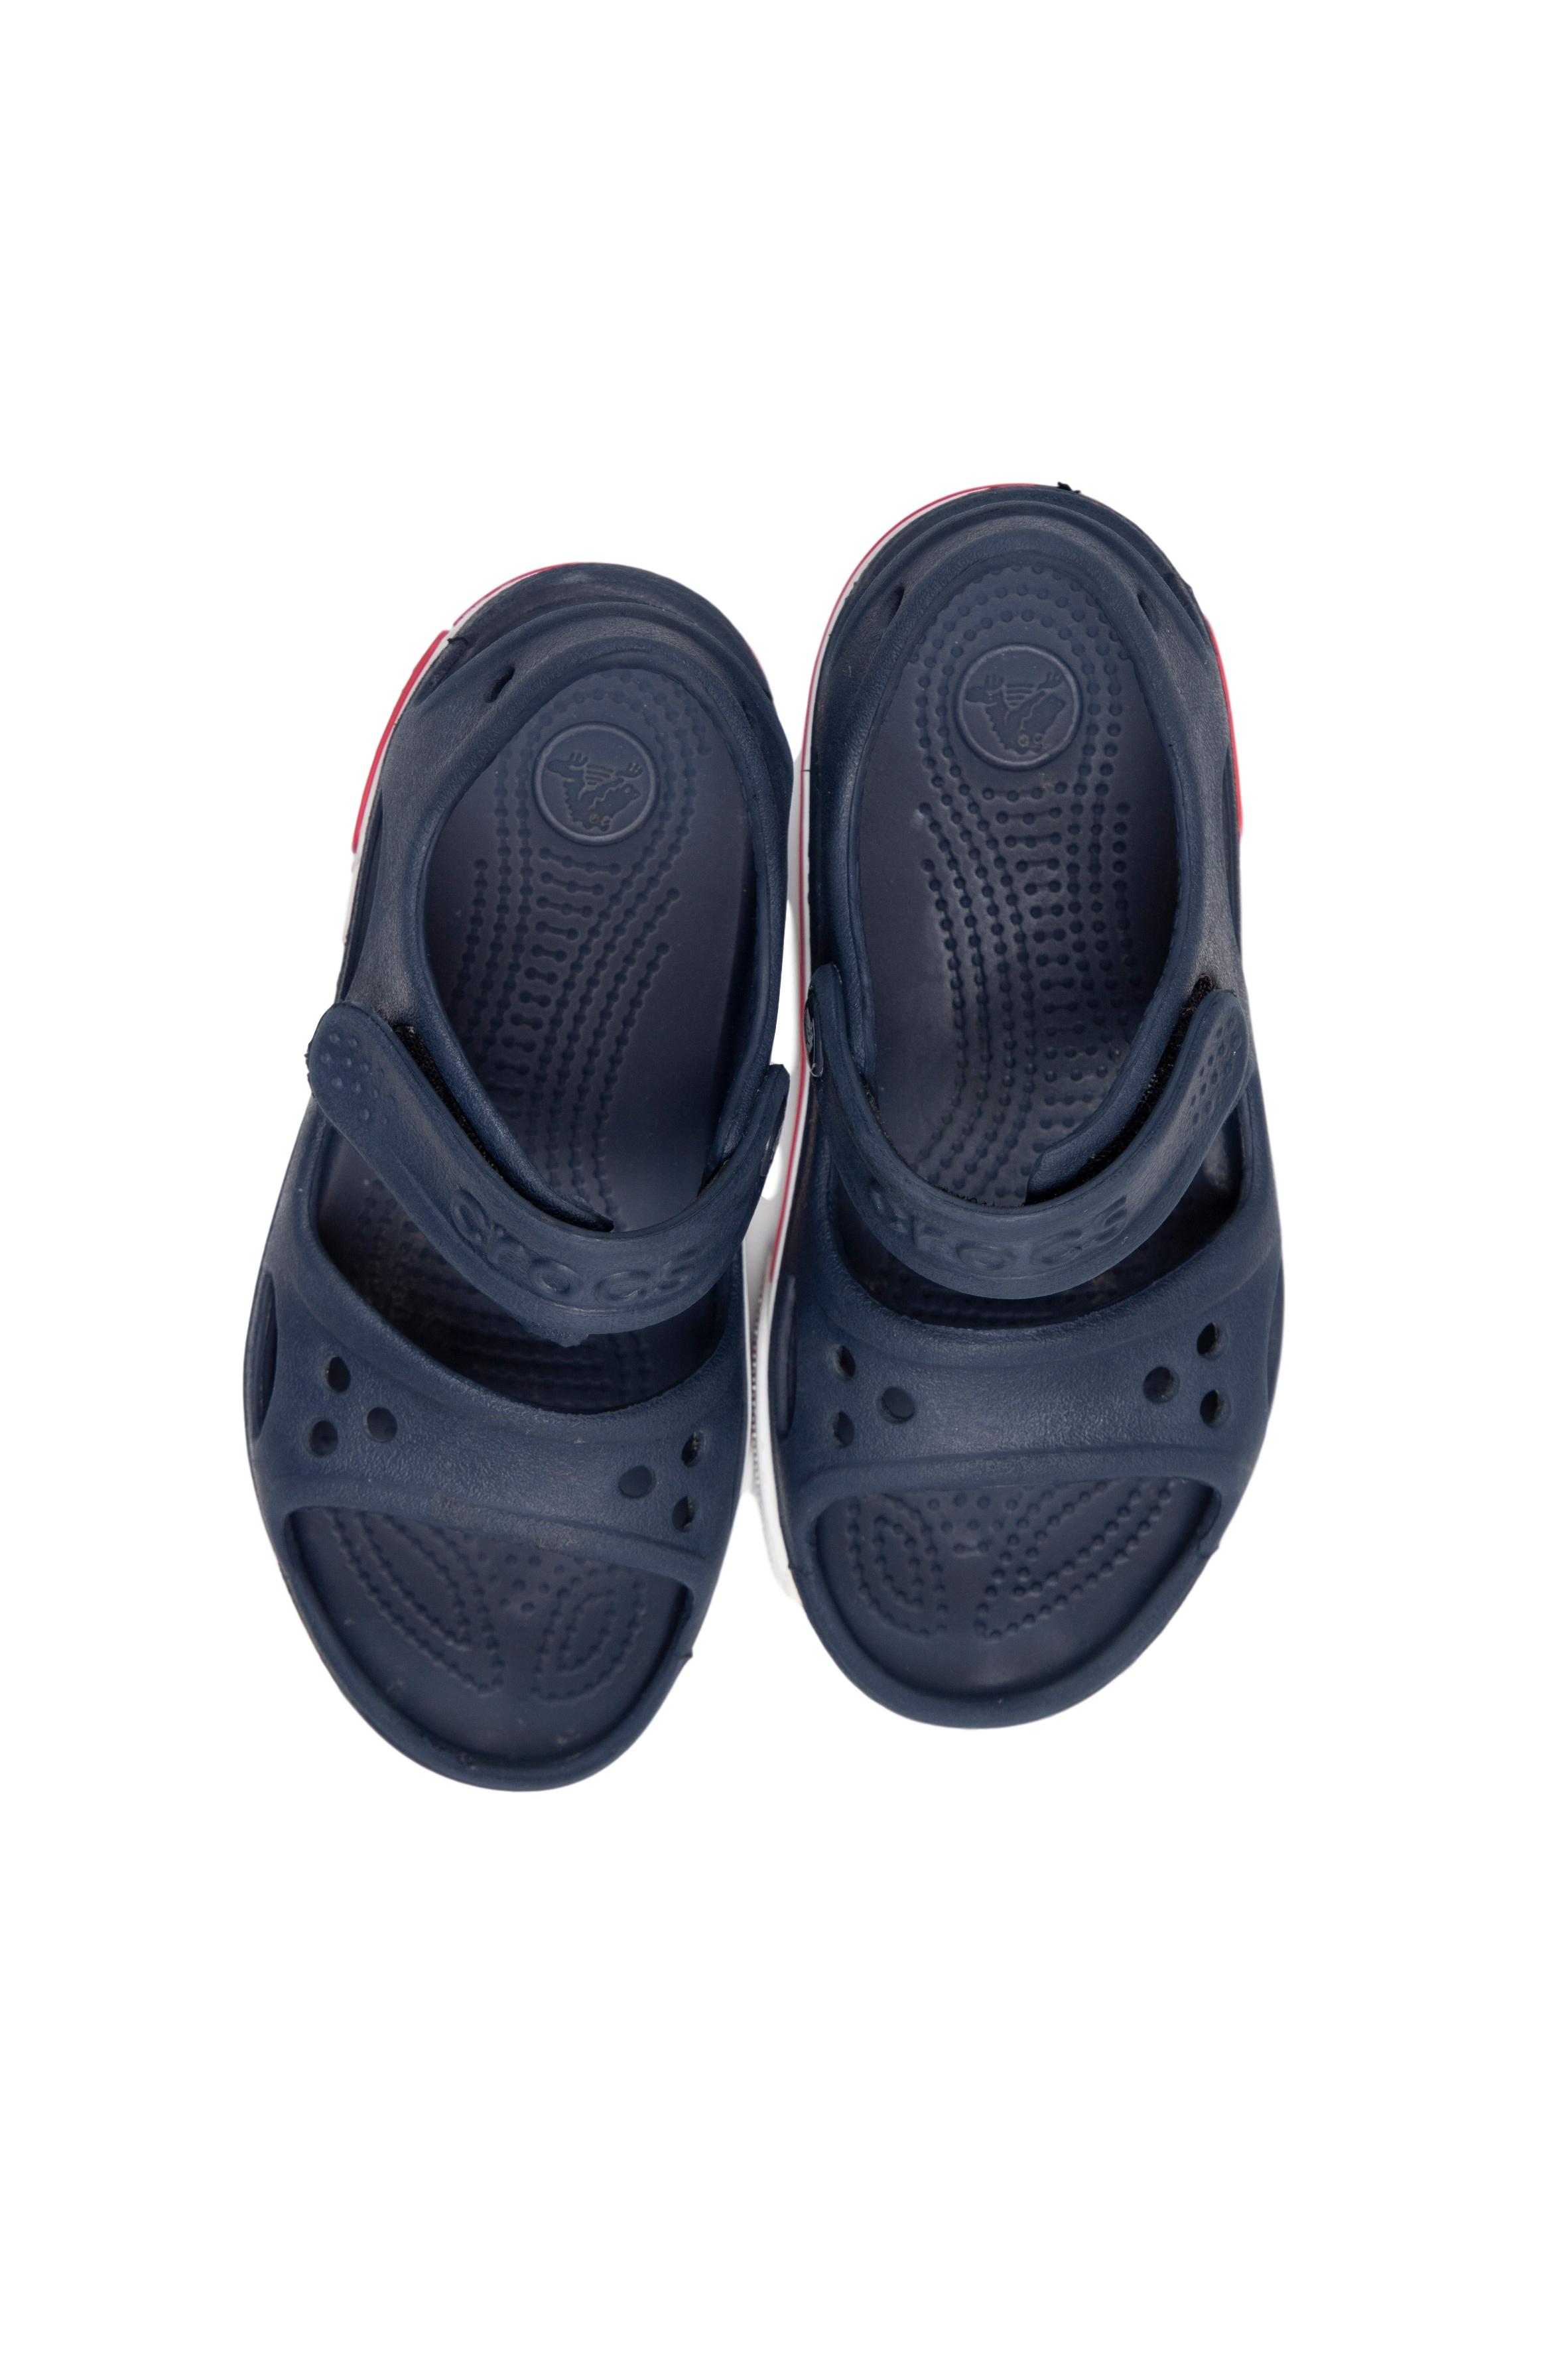 Sandalias de marca Crocs abiertas cierran con pega pega. Precio original S/  130 - Crocs | Las Traperas